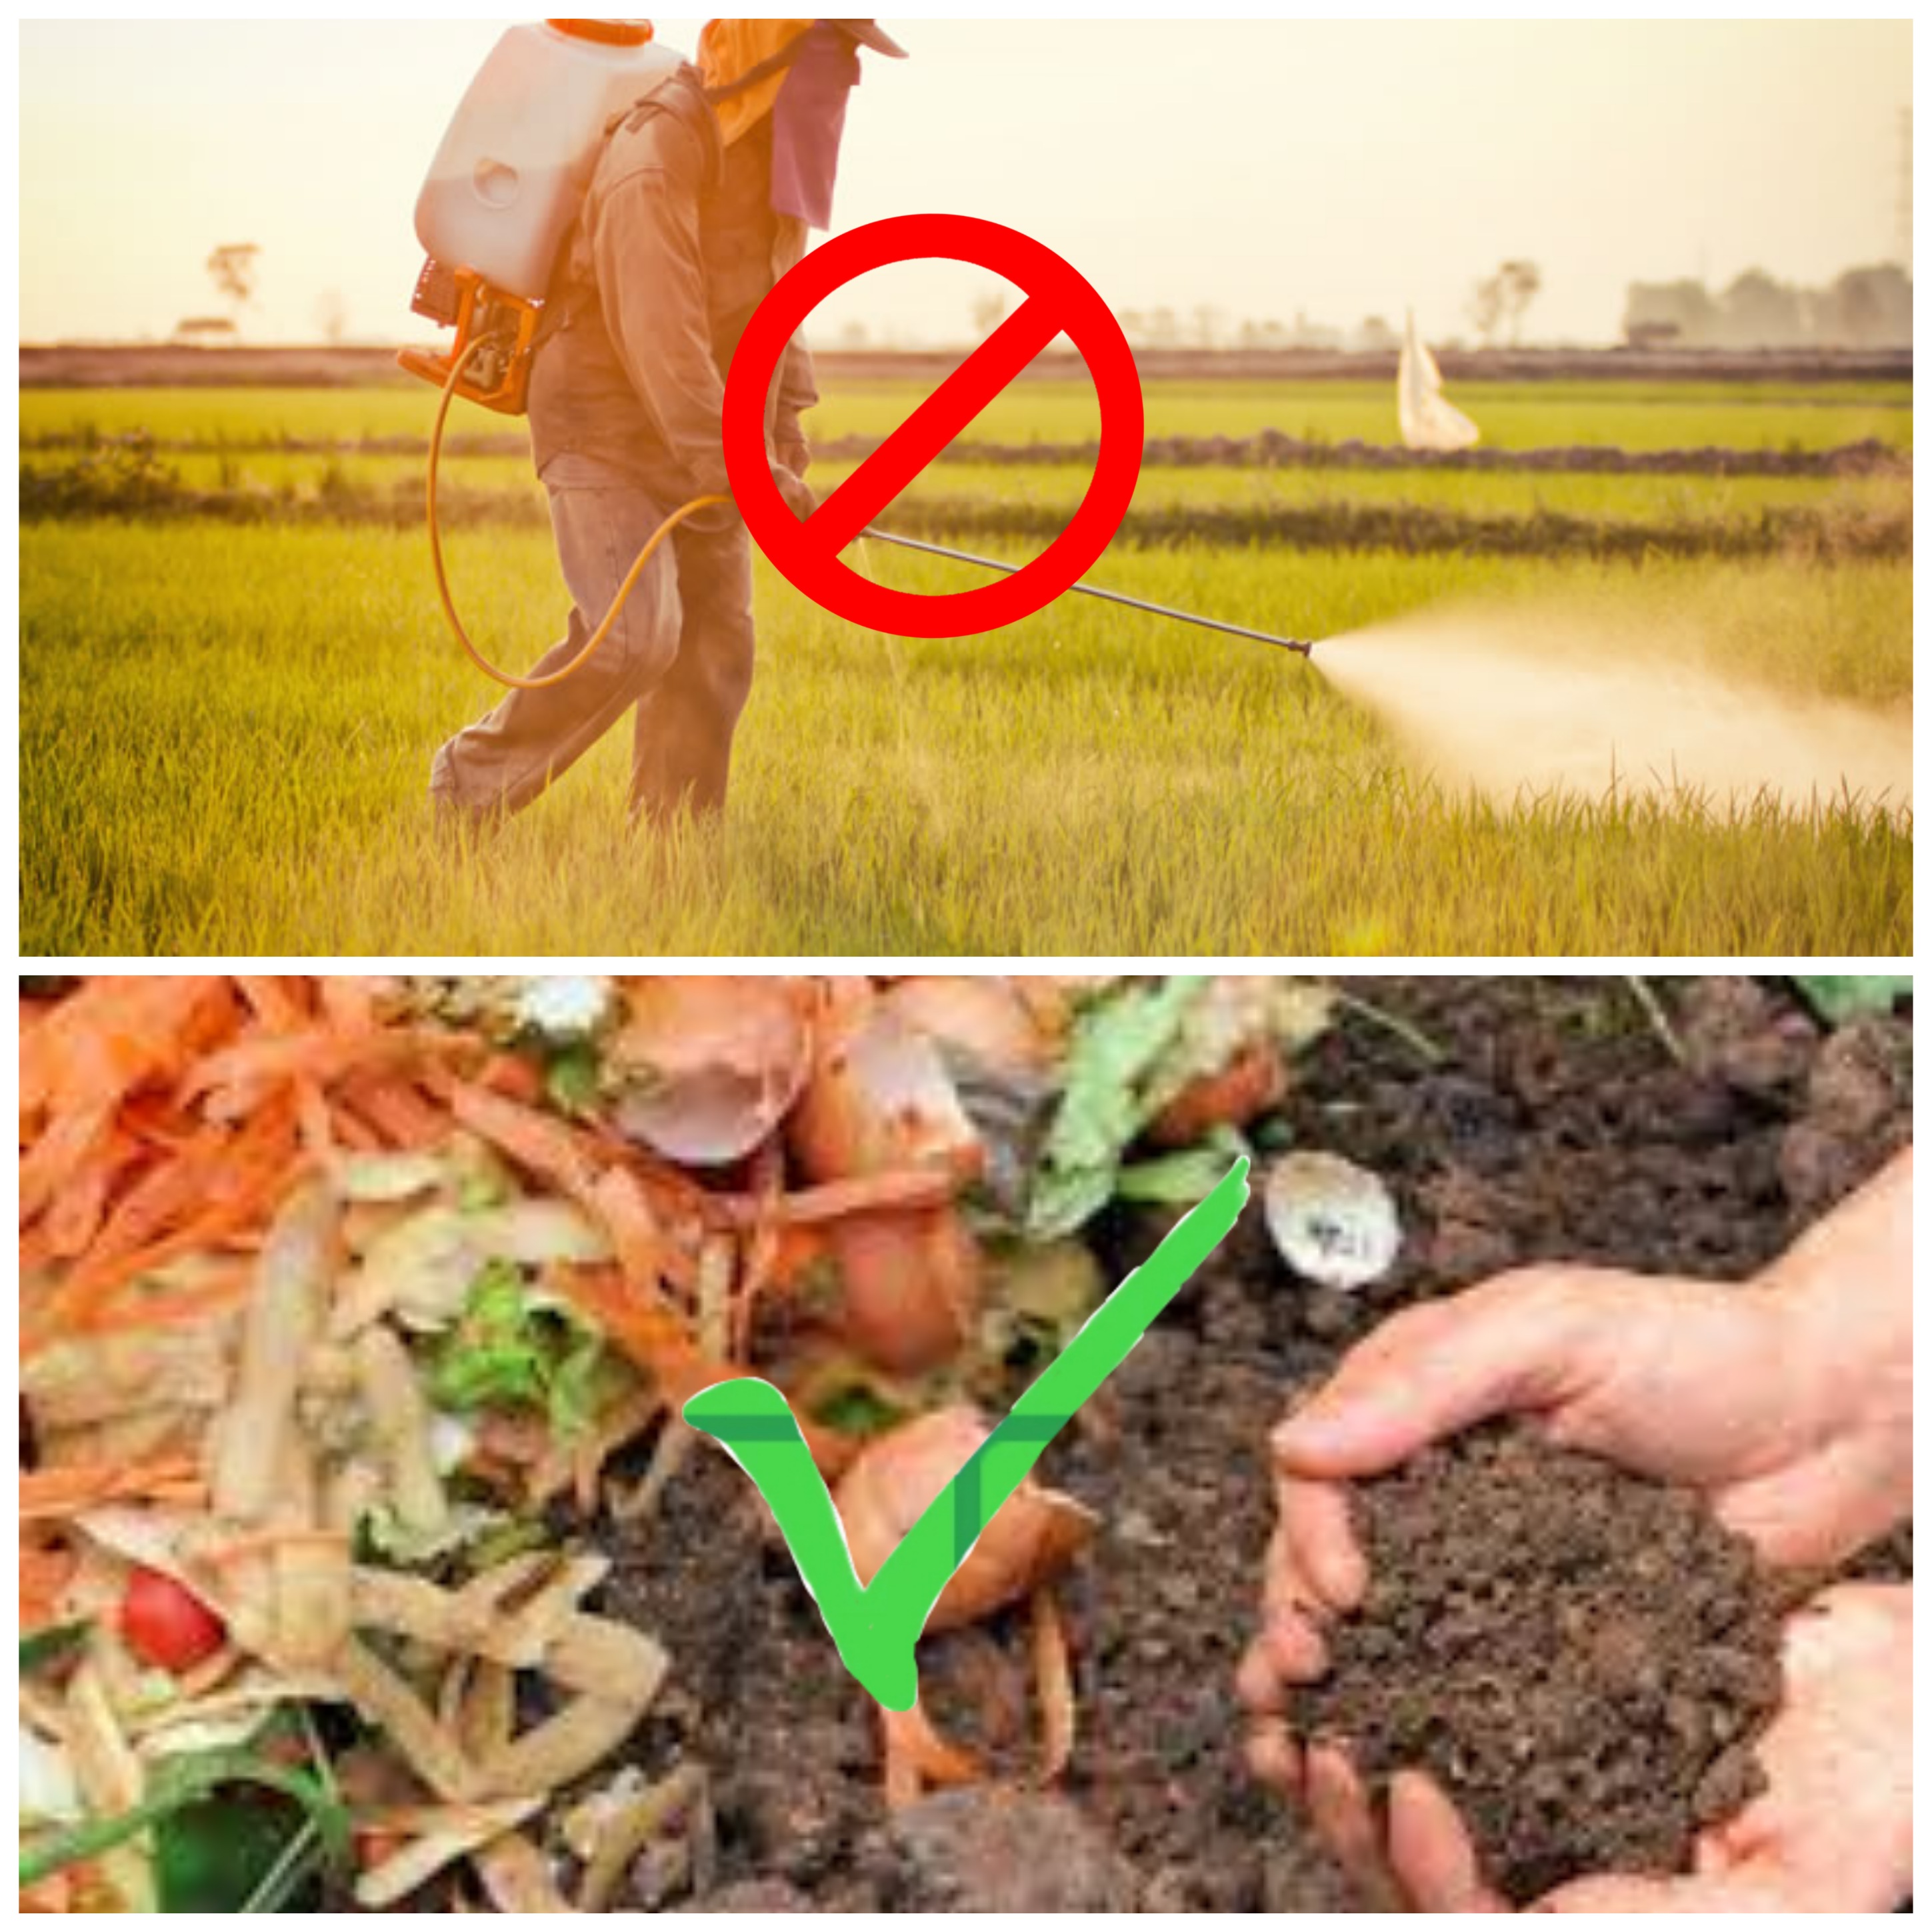 Avoid chemical fertilizers